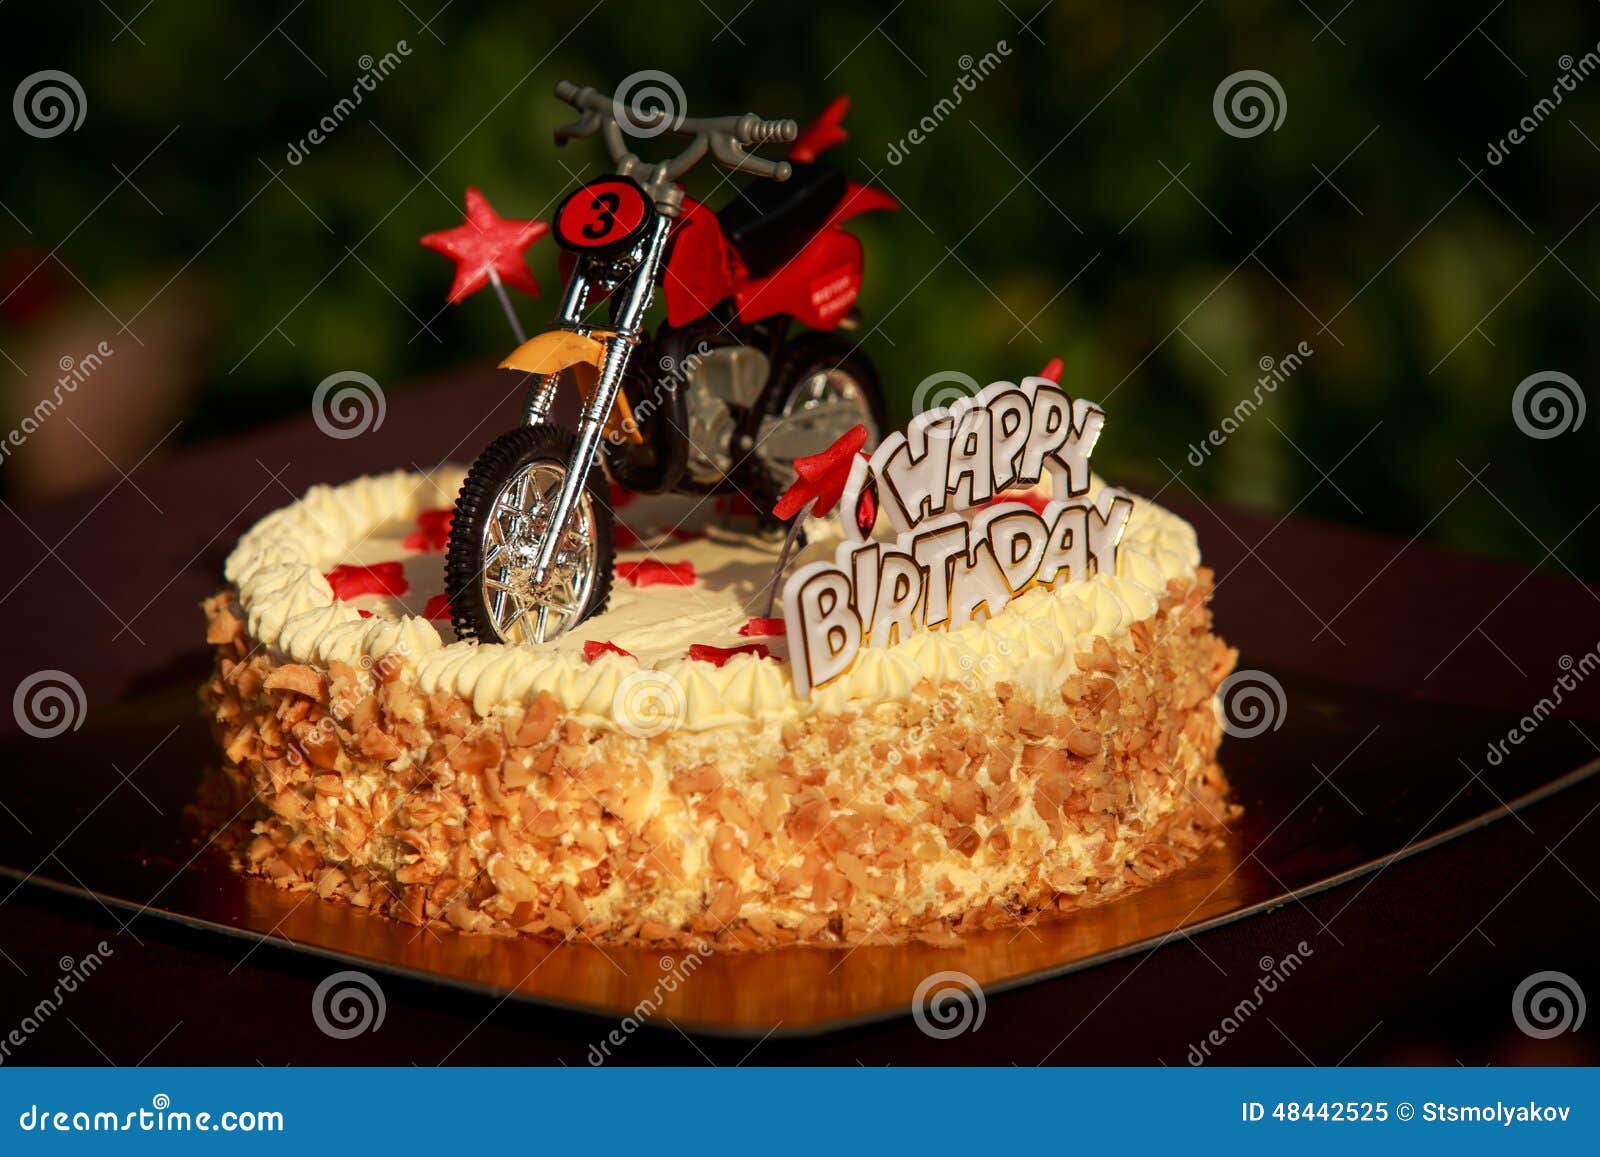 订购7 英寸 迷彩摩托车男性蛋糕 | CakeDeliver